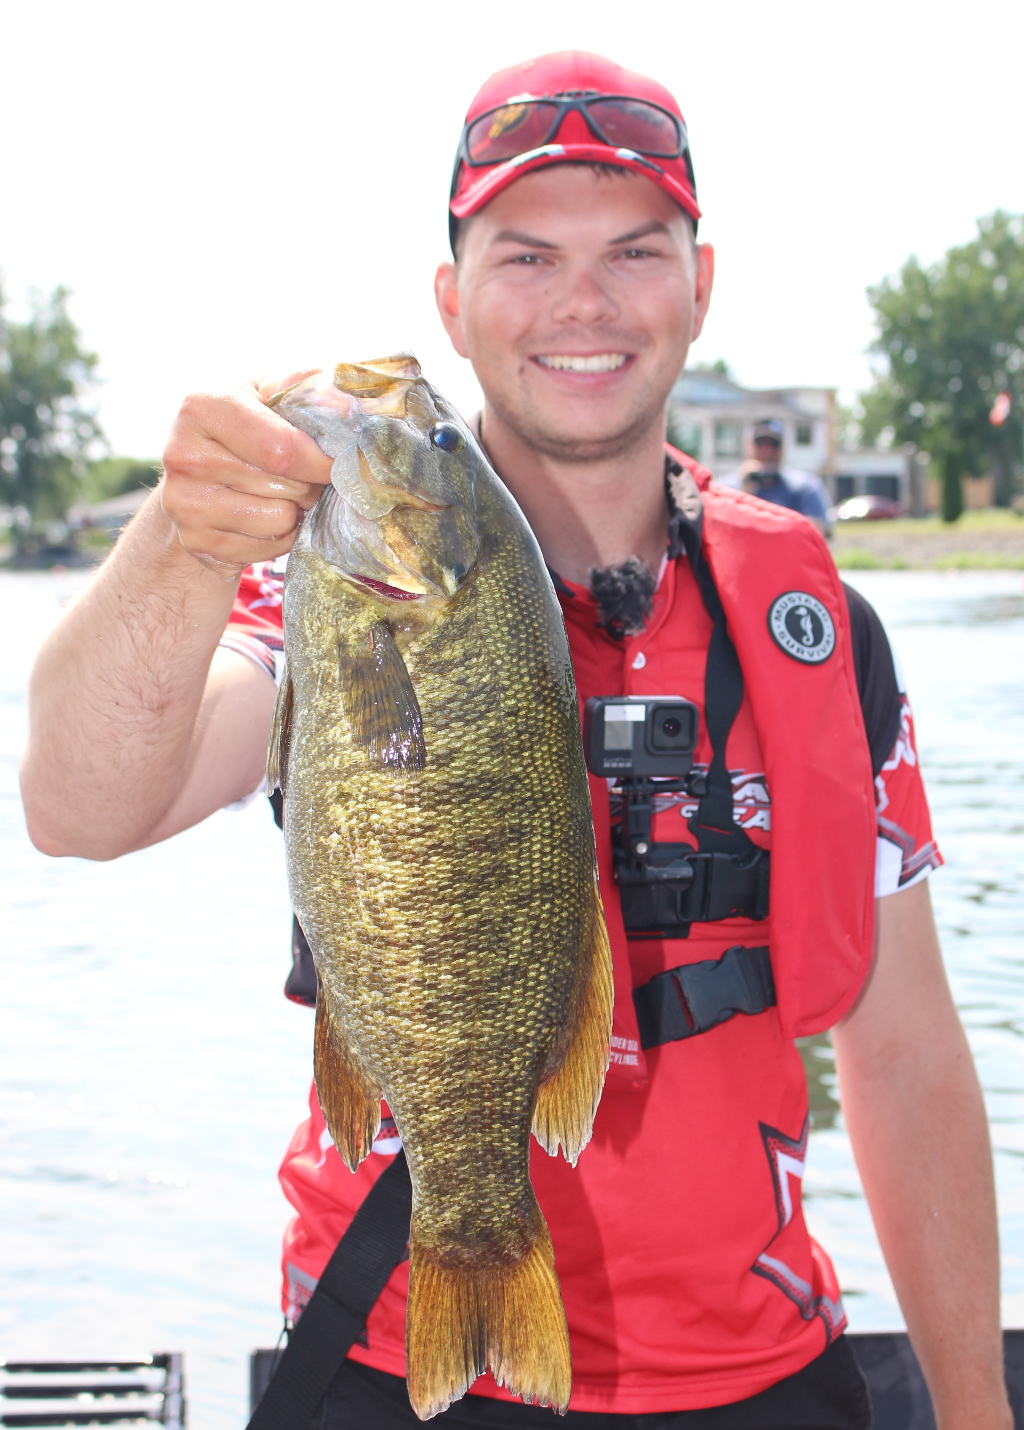 Pêche à l’achigan dans la rivière Richelieu:  récit de la pratique et de la victoire de Samuel au tournoi de Pro-Bass Canada!
